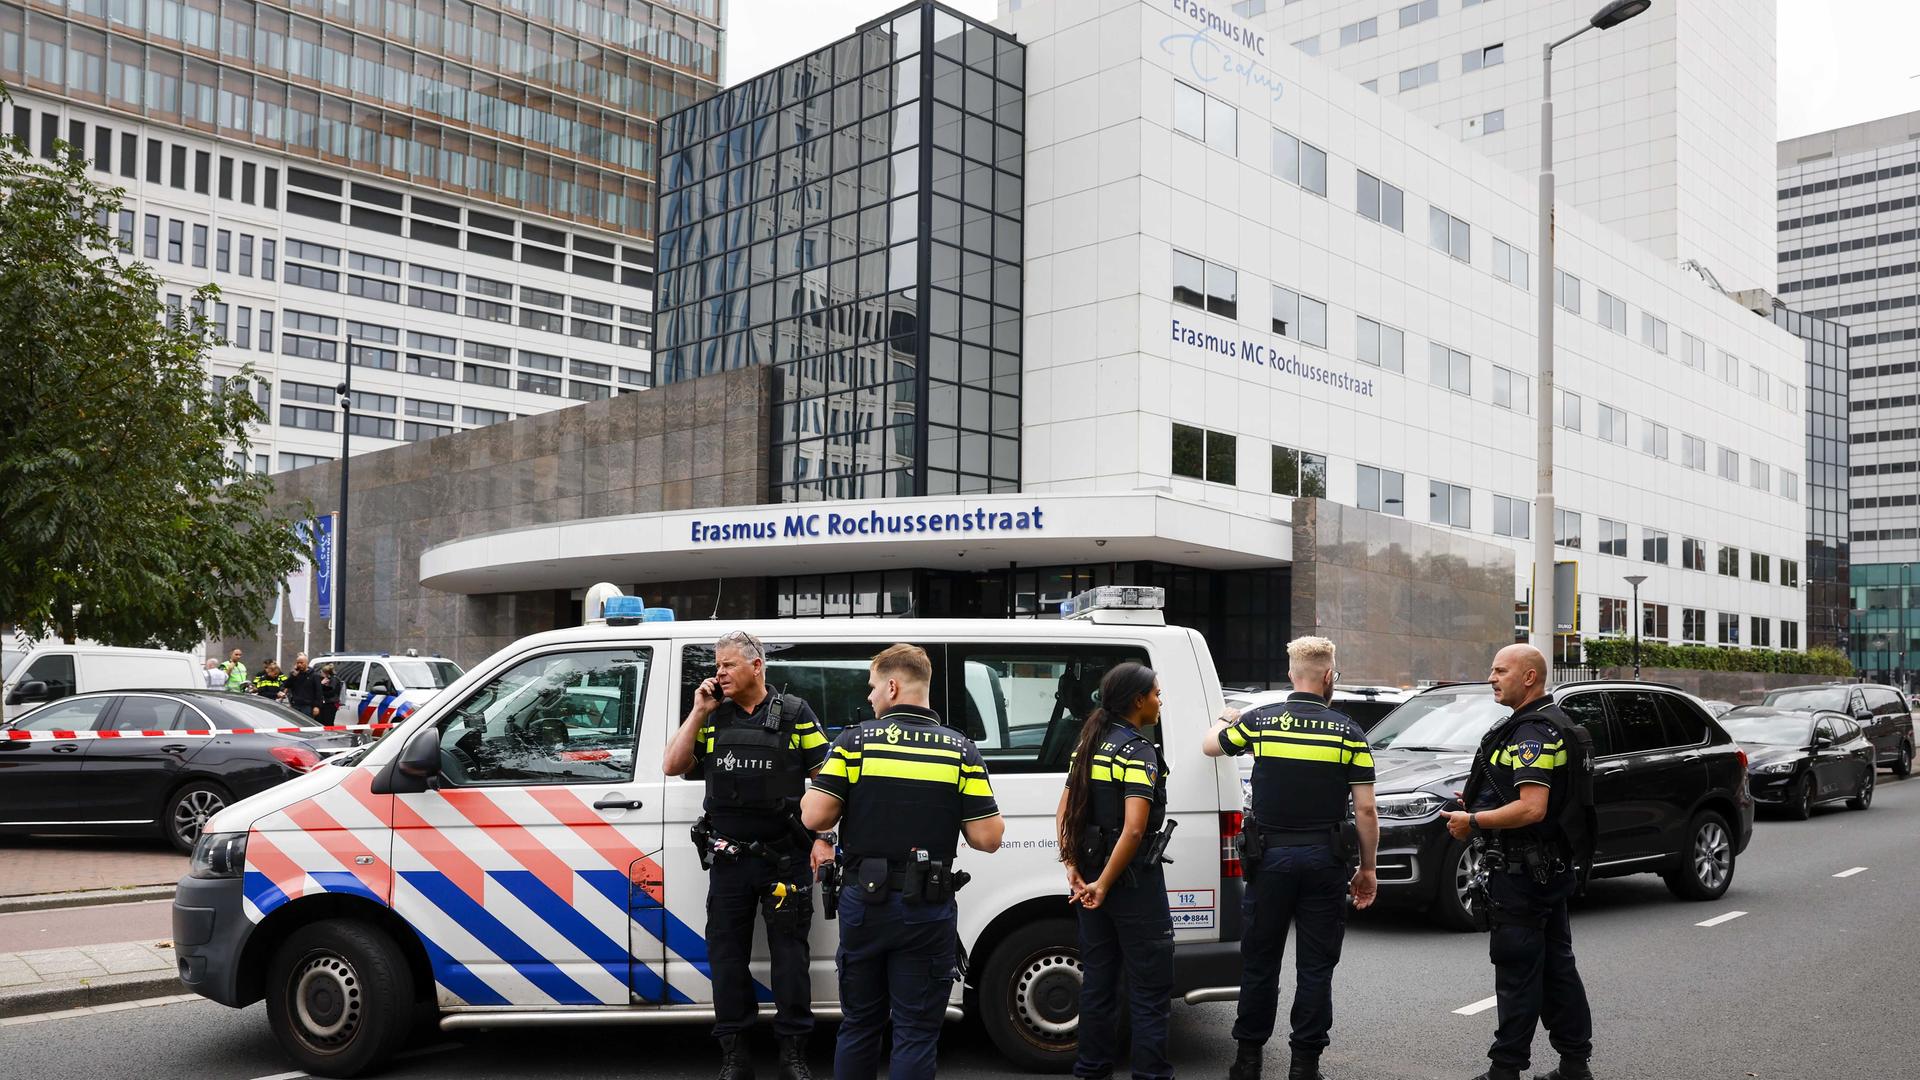 Rotterdam - Student erschießt drei Menschen - Motiv unklar